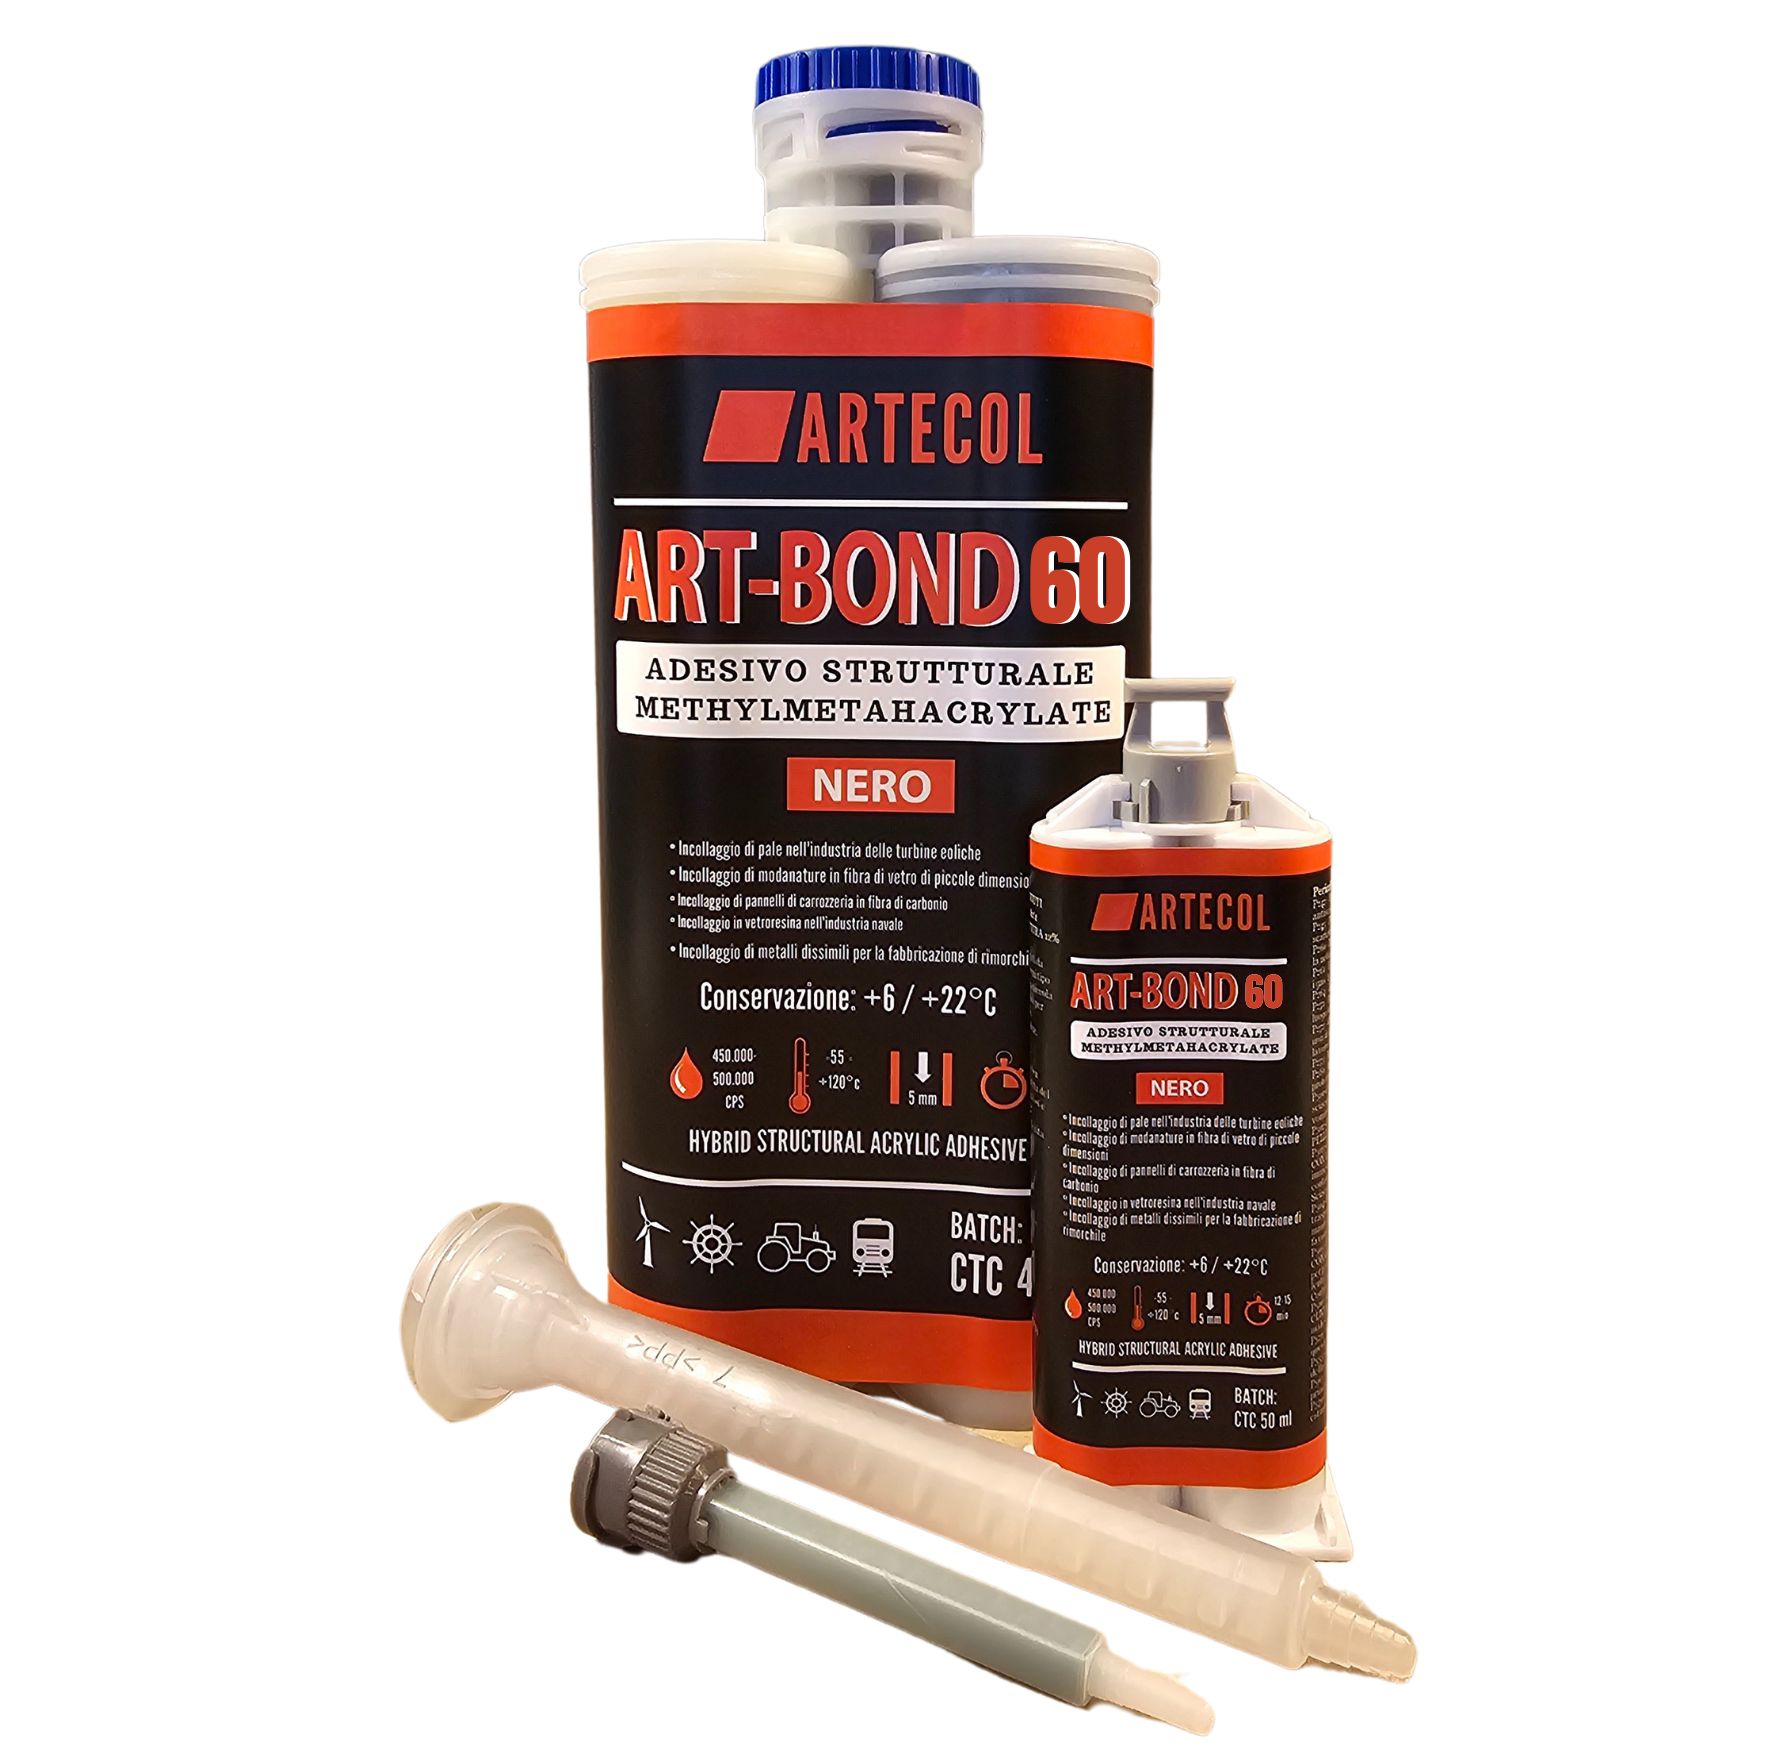 ART-BOND 60 Adesivo acrilico struturale MMA 1:1 (INDURIMENTO 45-60 min da ARTECOL